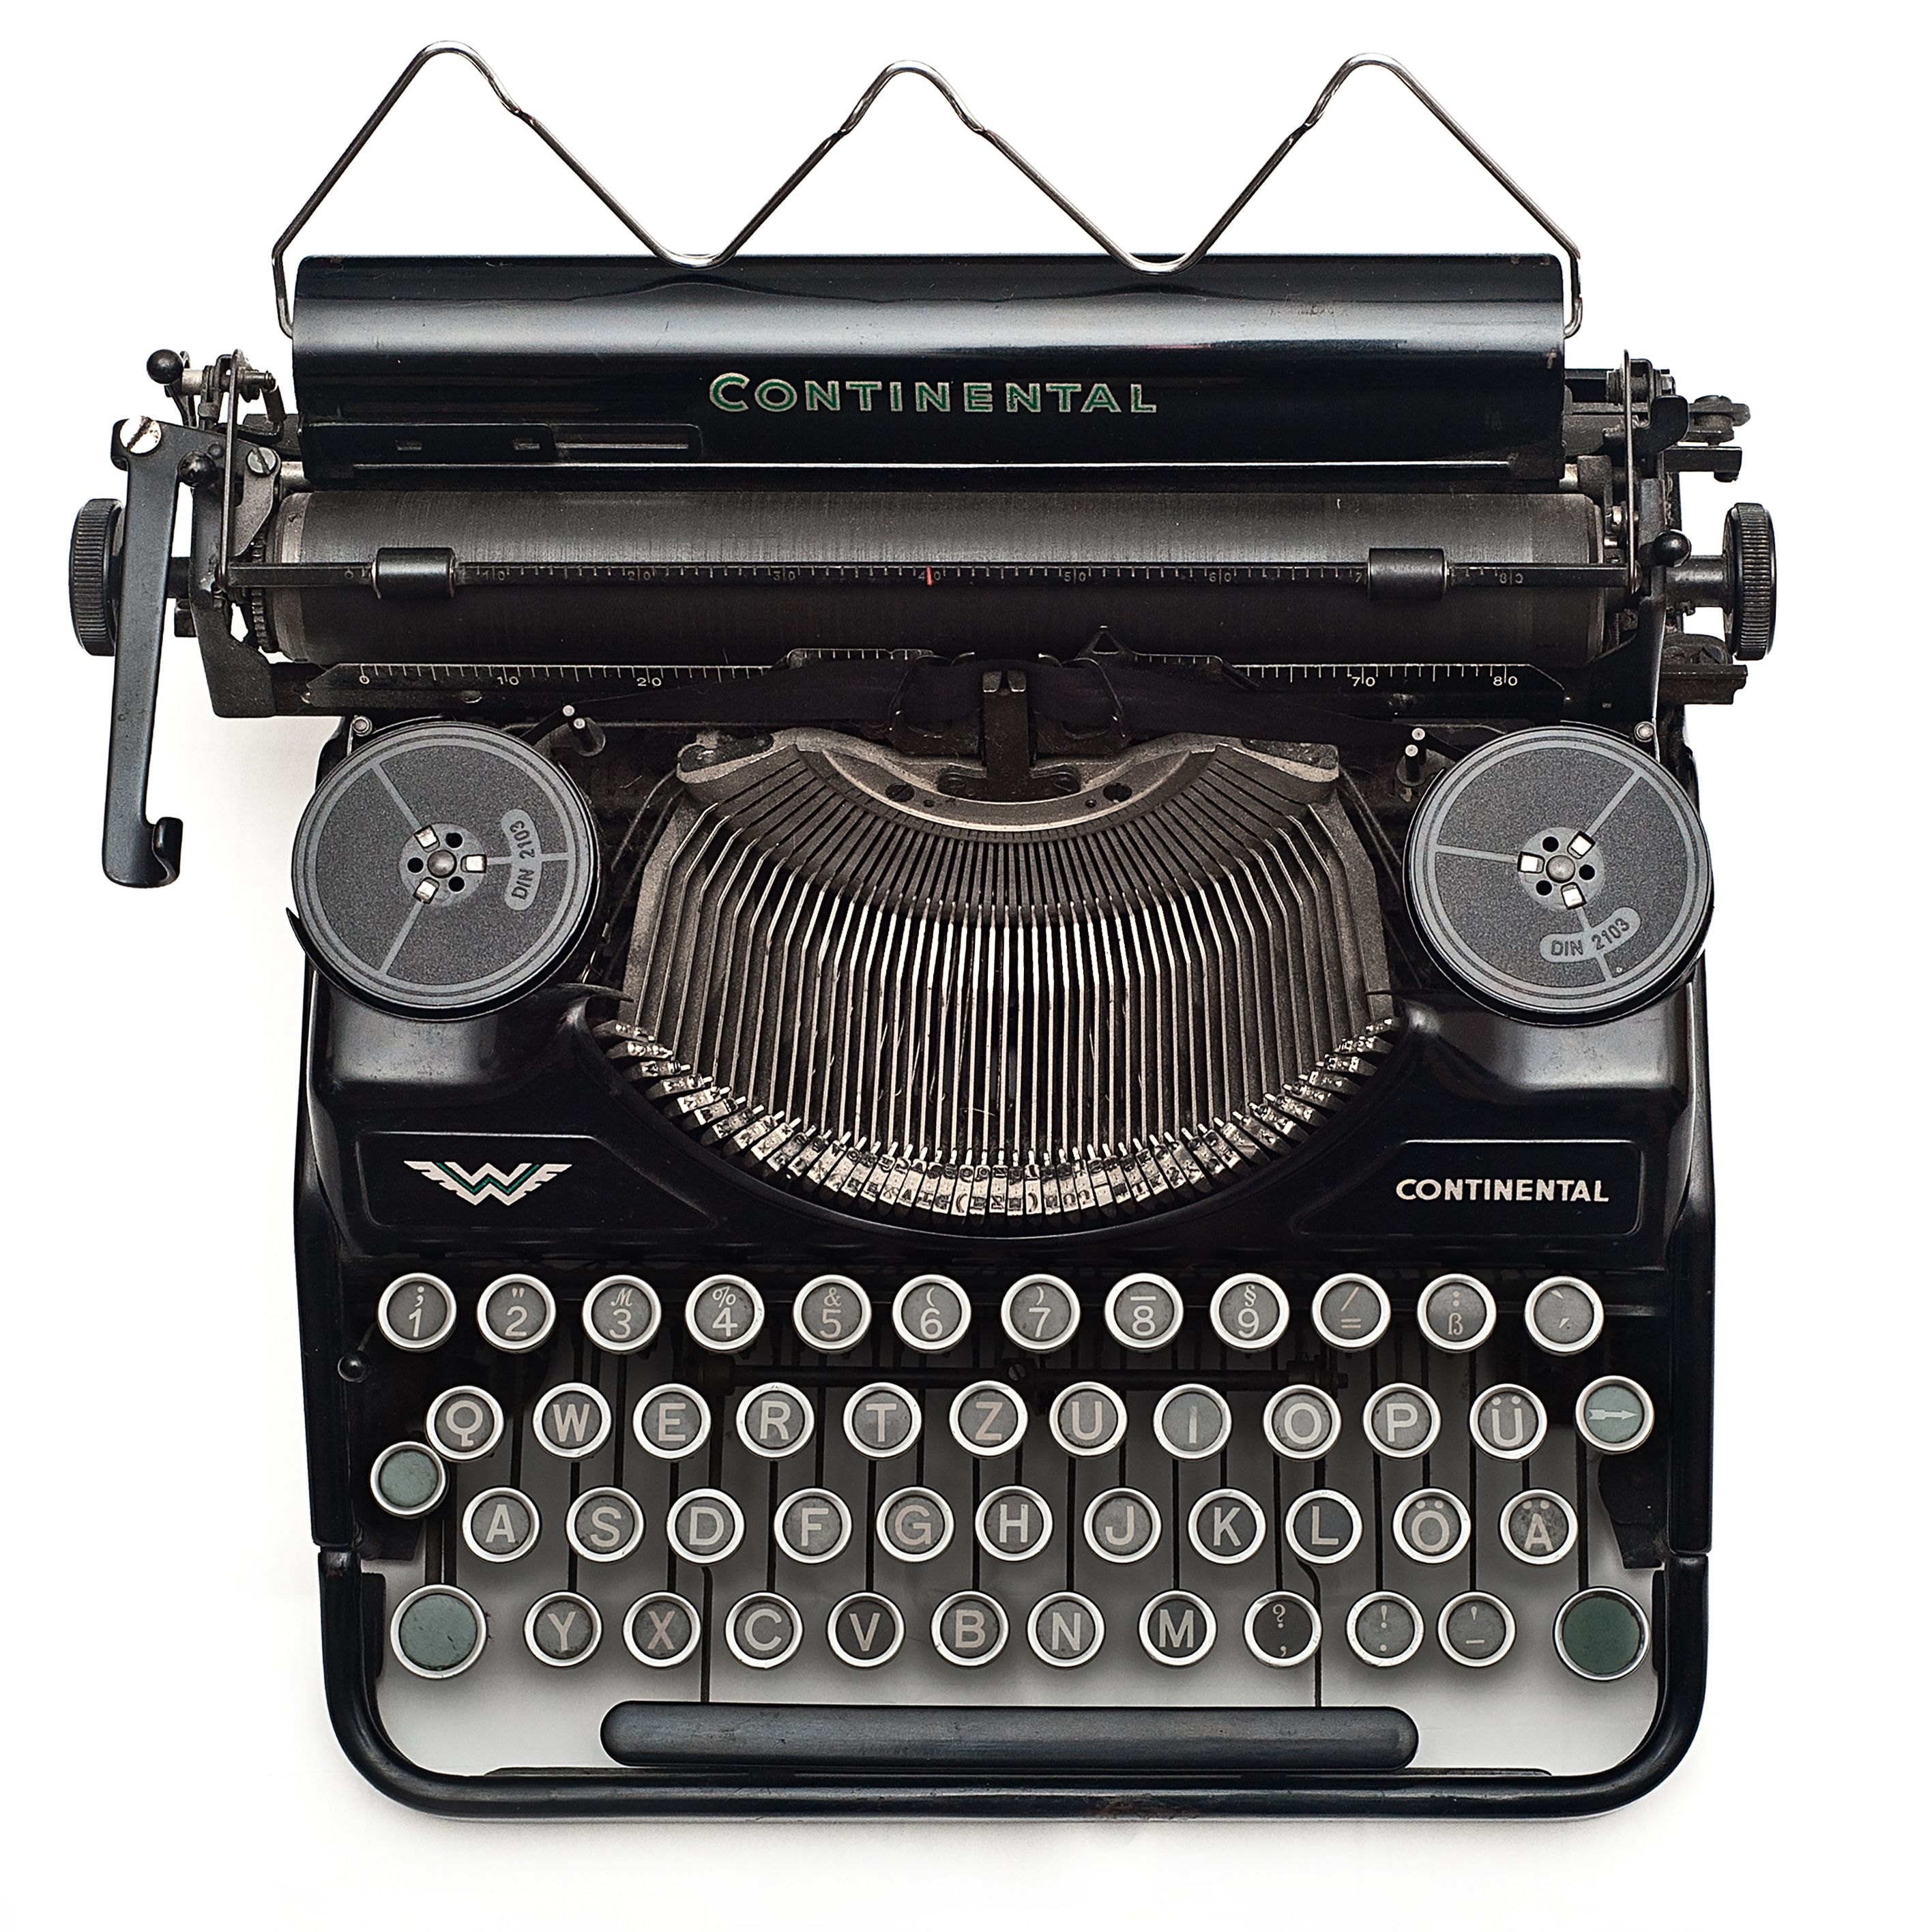 Old Black Typewriter image - Free stock photo - Public Domain photo ...